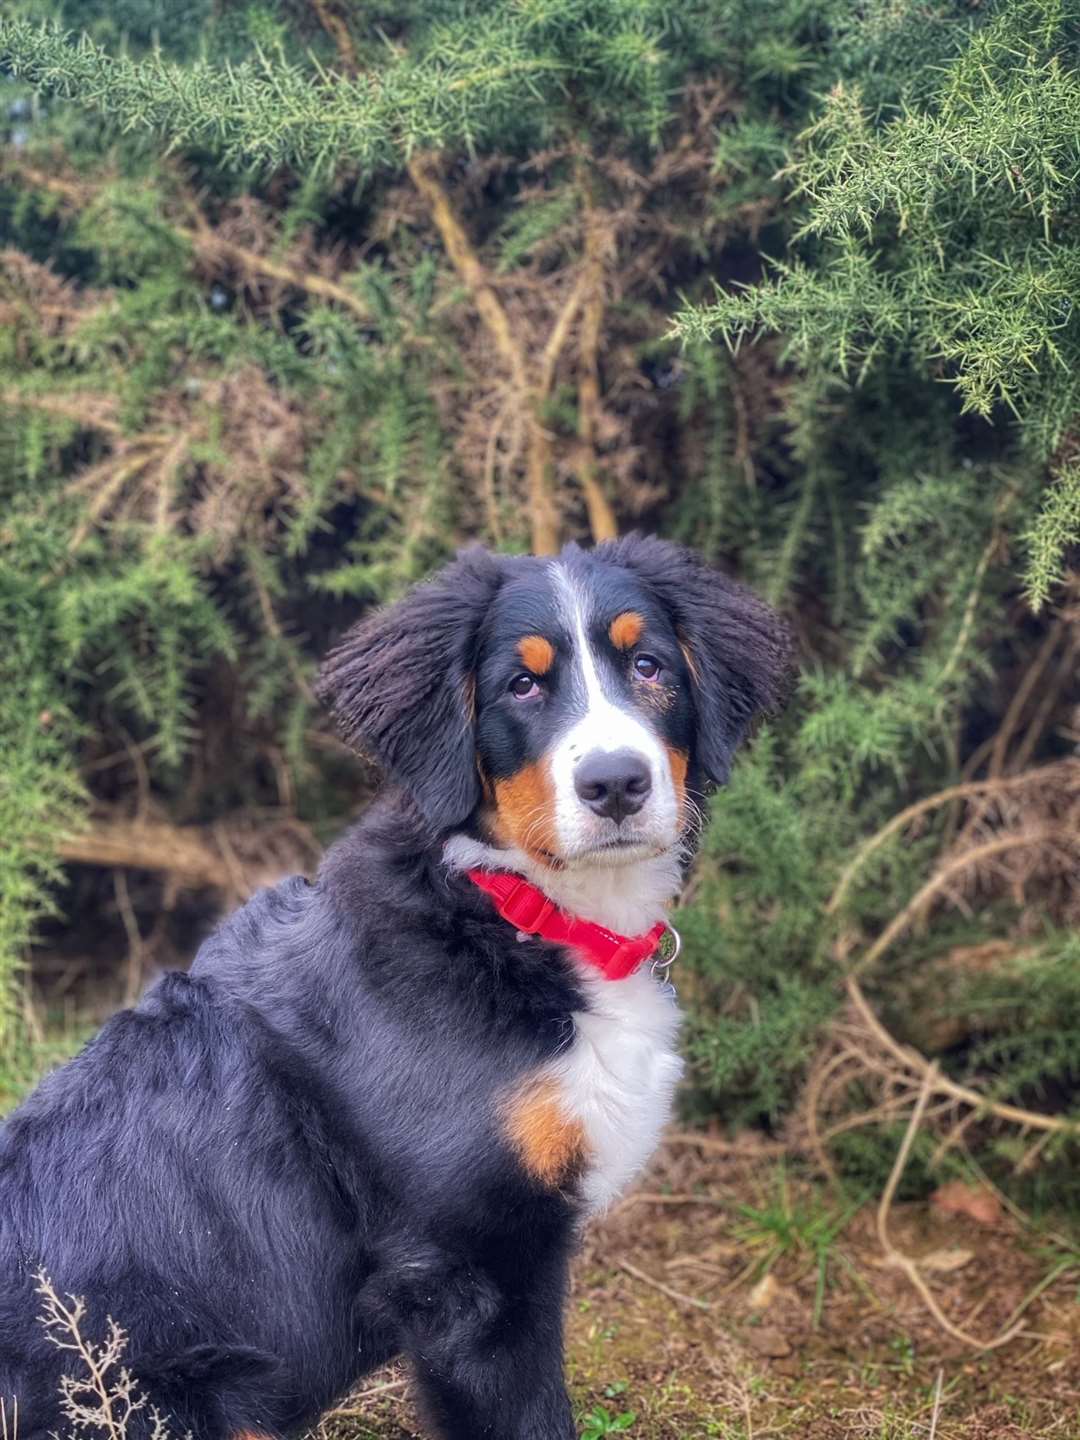 Hudson as a puppy